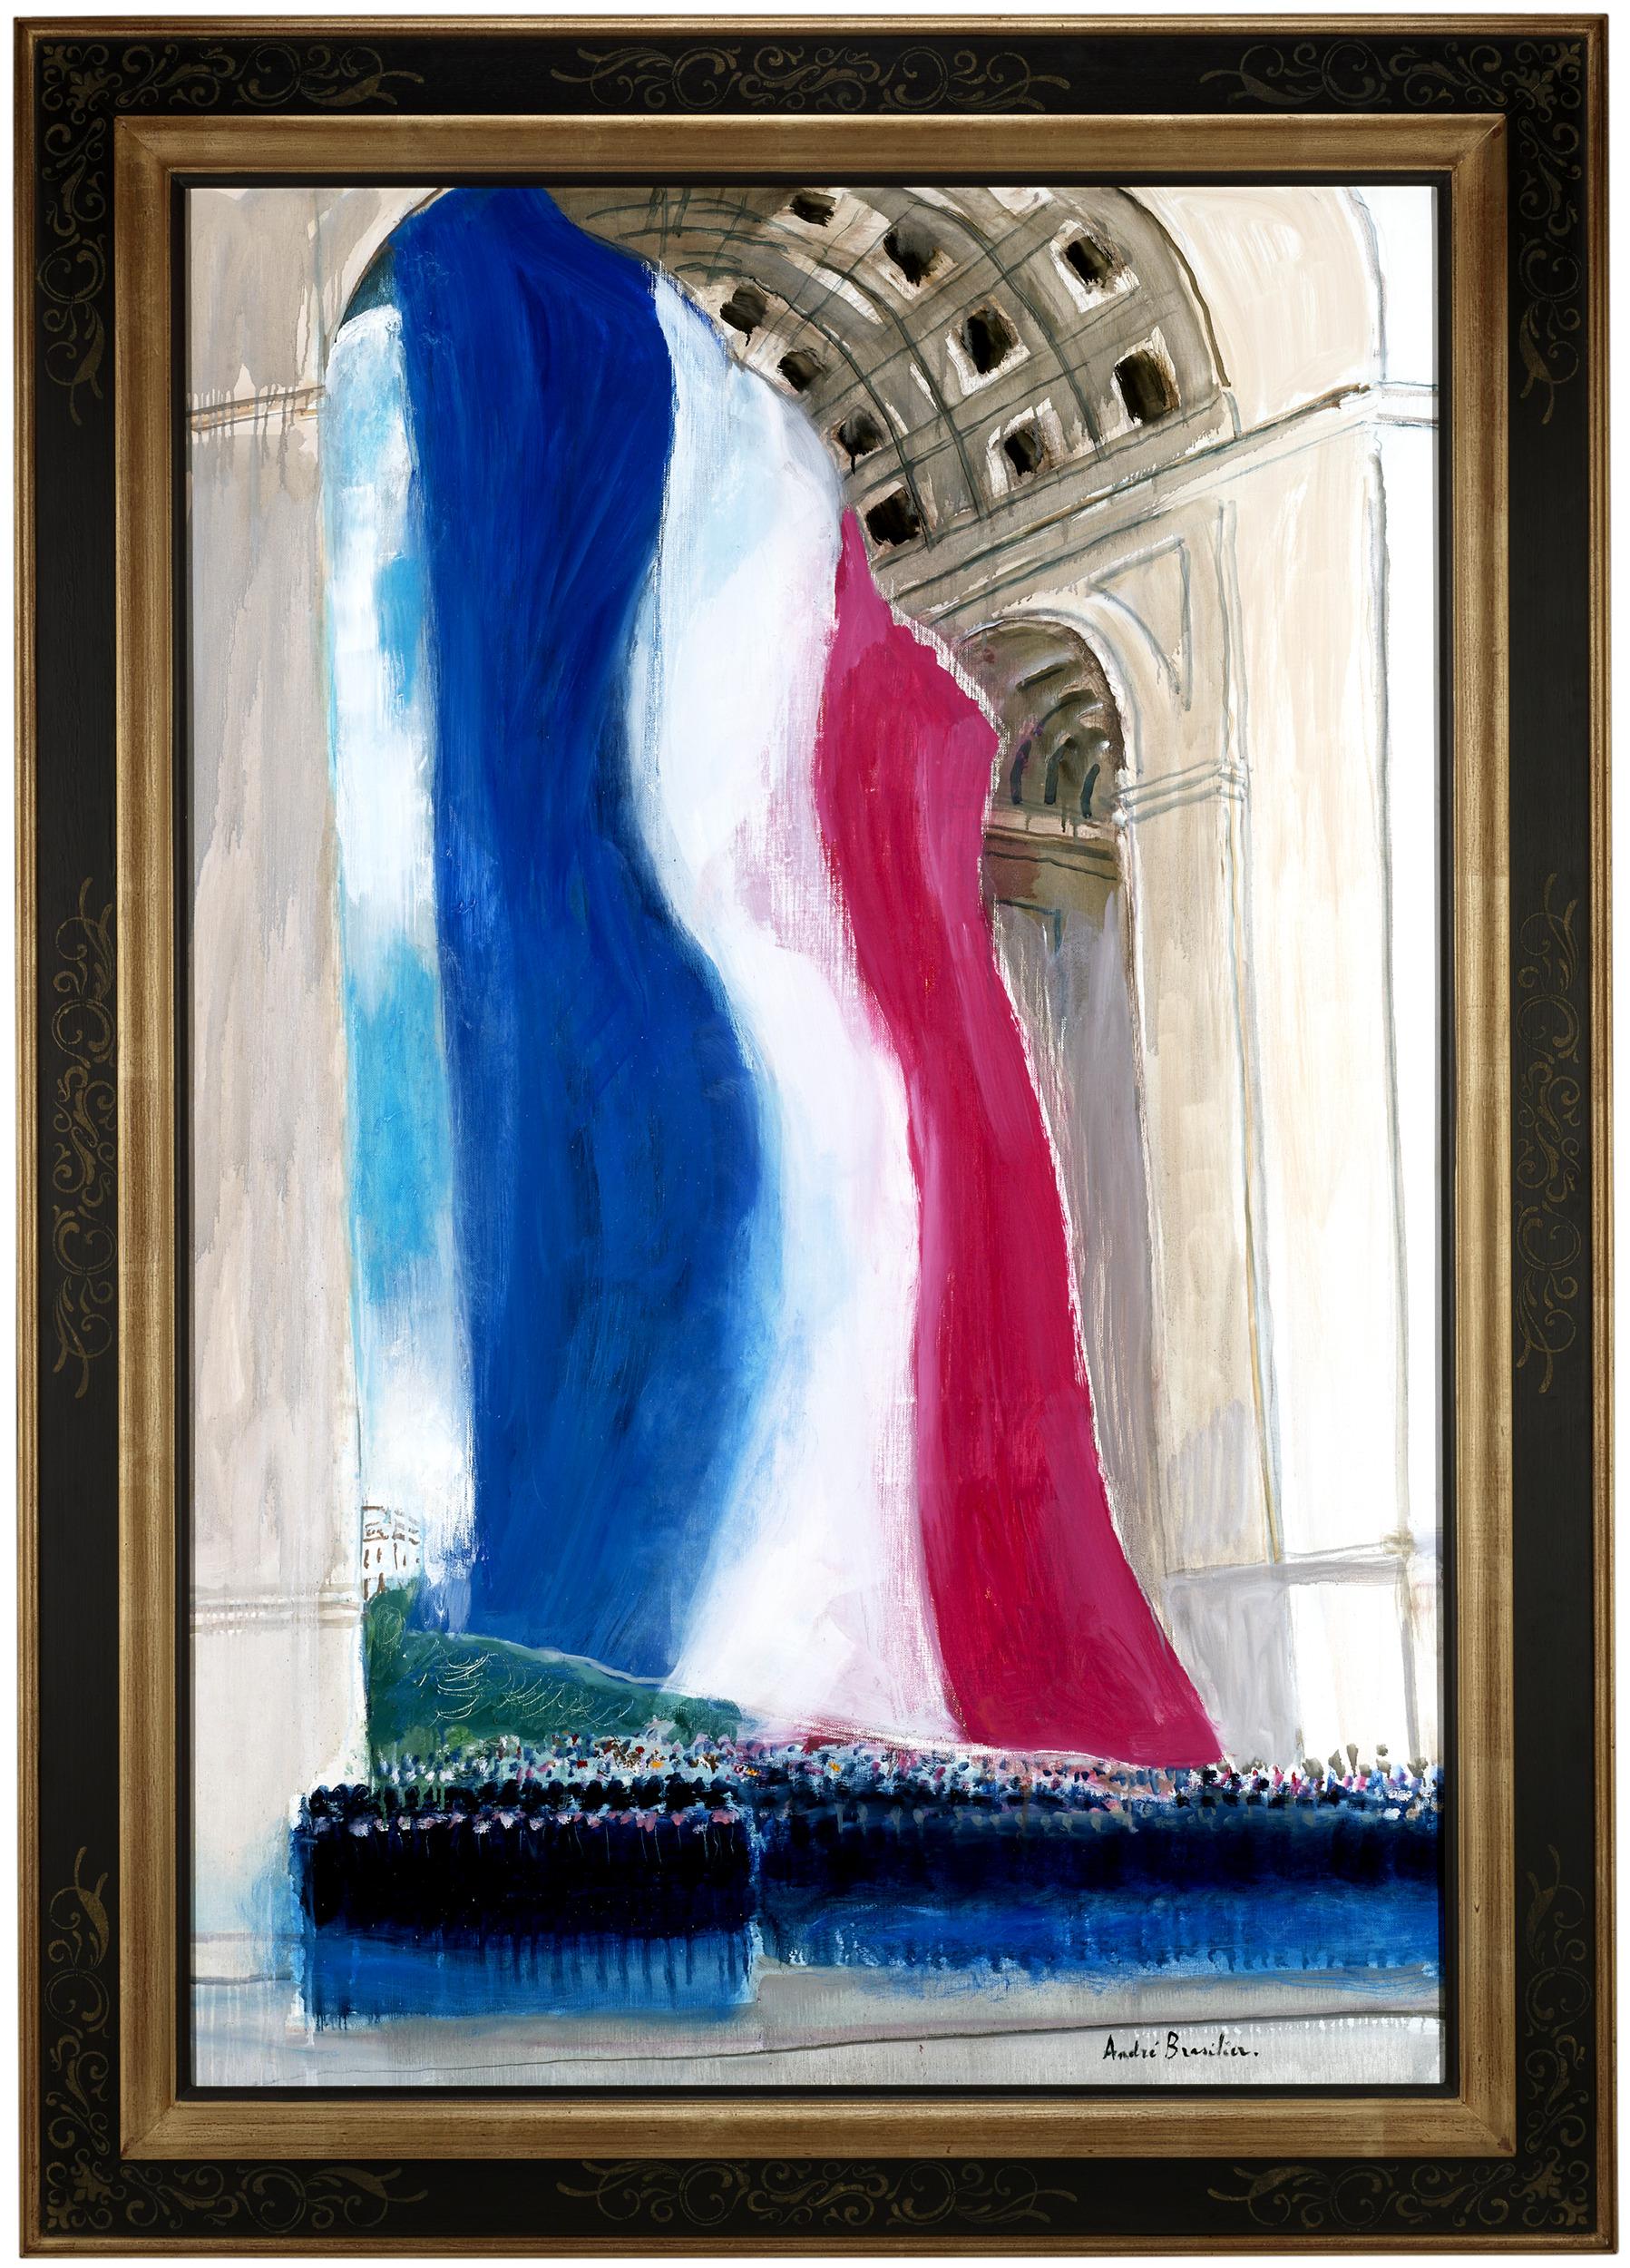 L'Arc de triomphe - Painting by André Brasilier